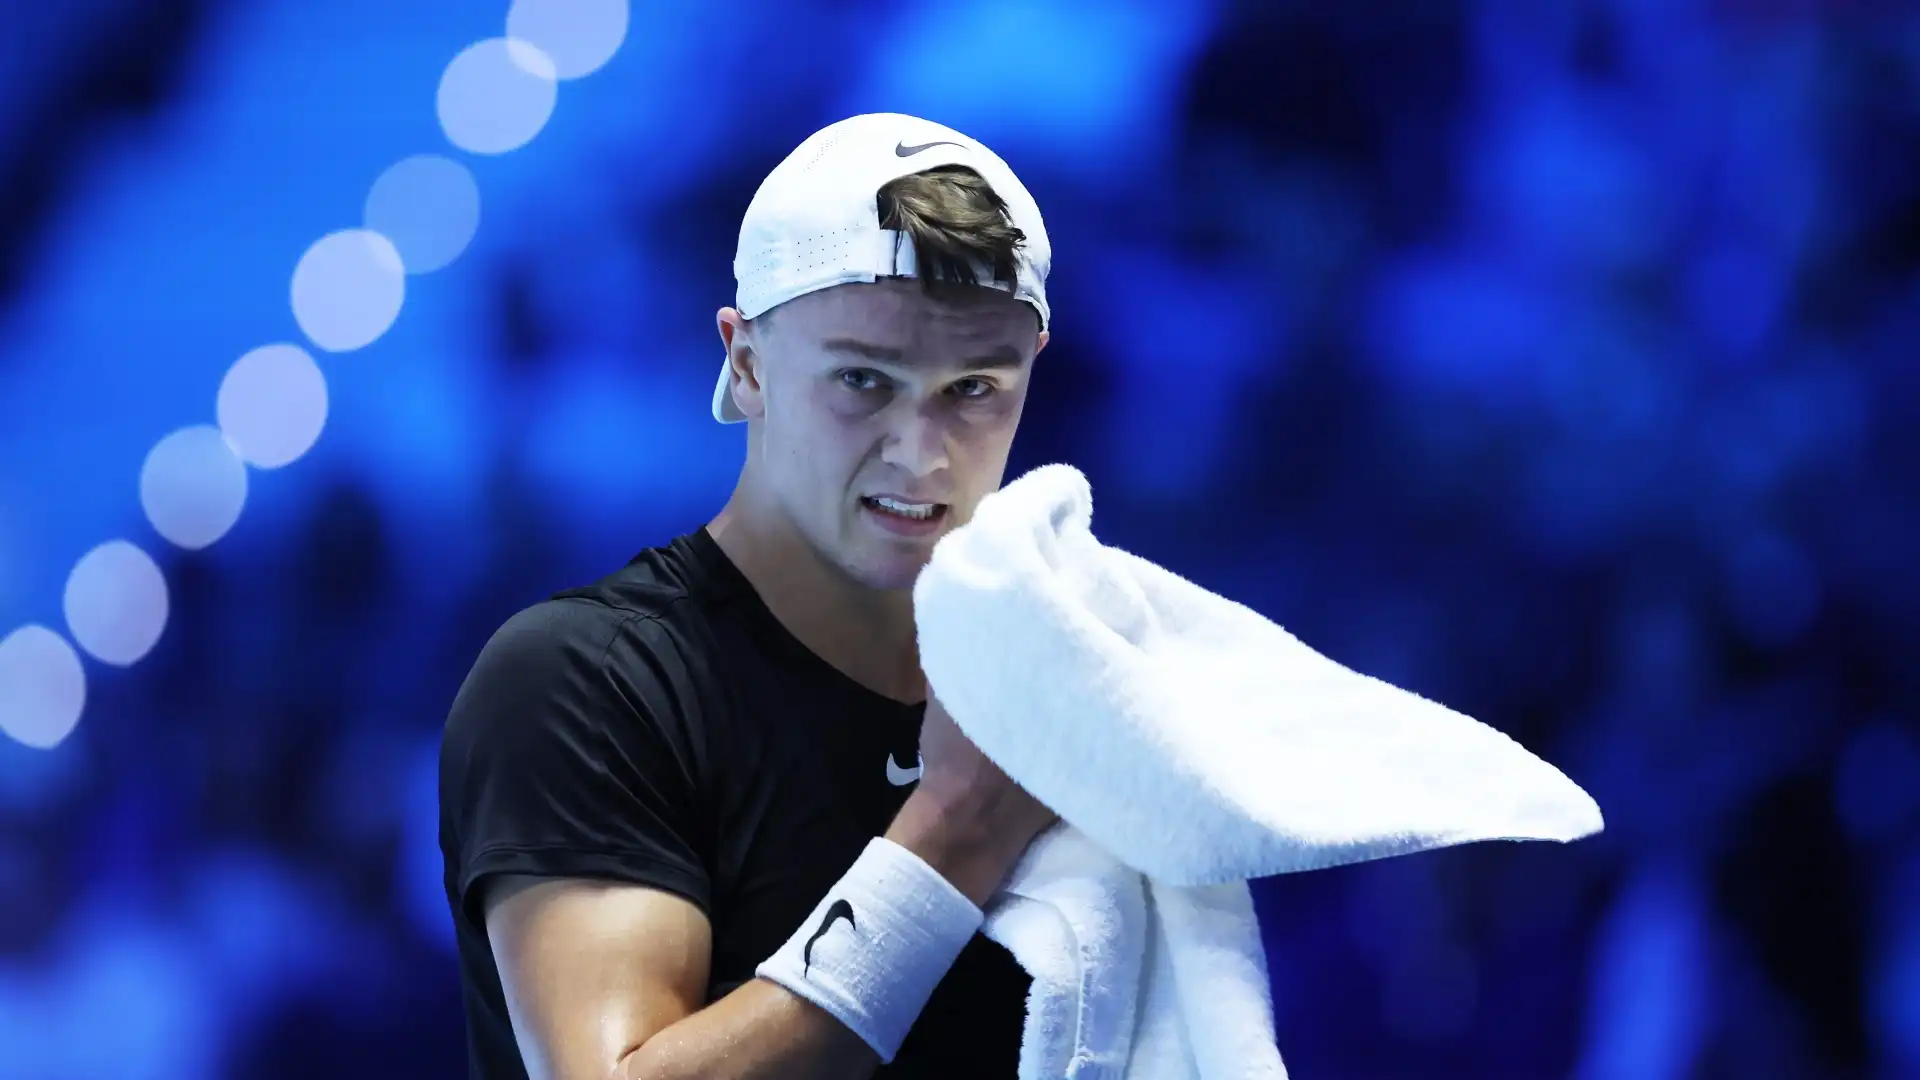 Holger Rune saluta con un pronostico: “Il favorito resta Djokovic”